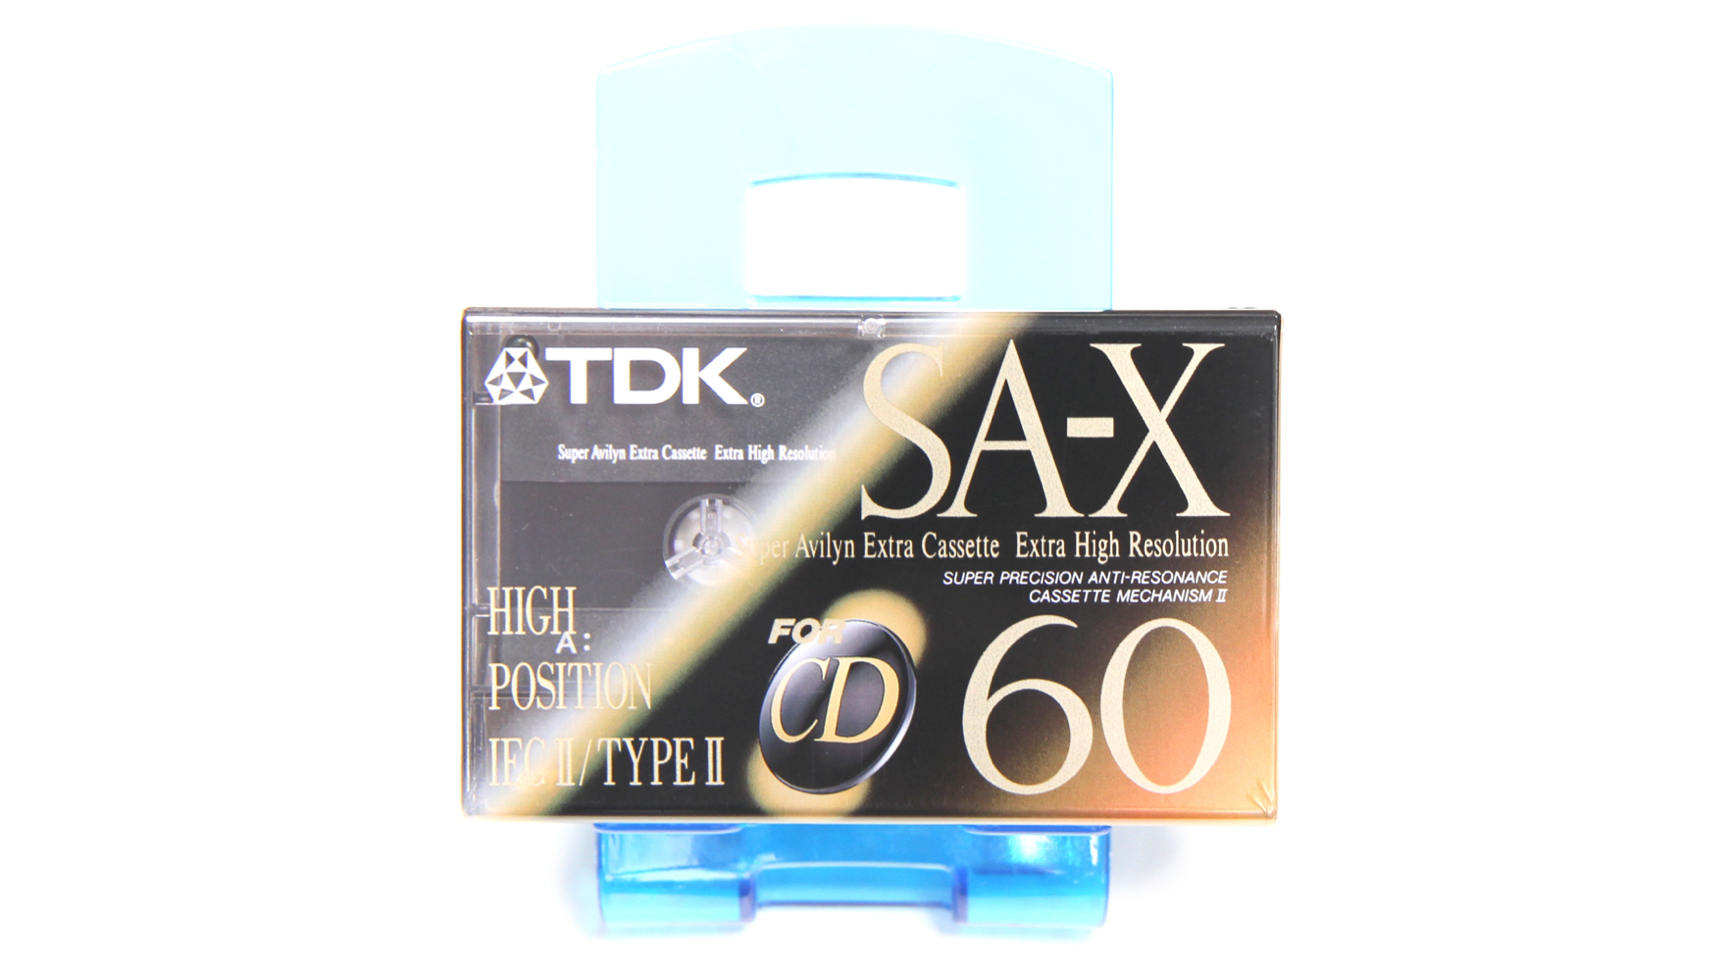 TDK SA-X60 Position Chrome